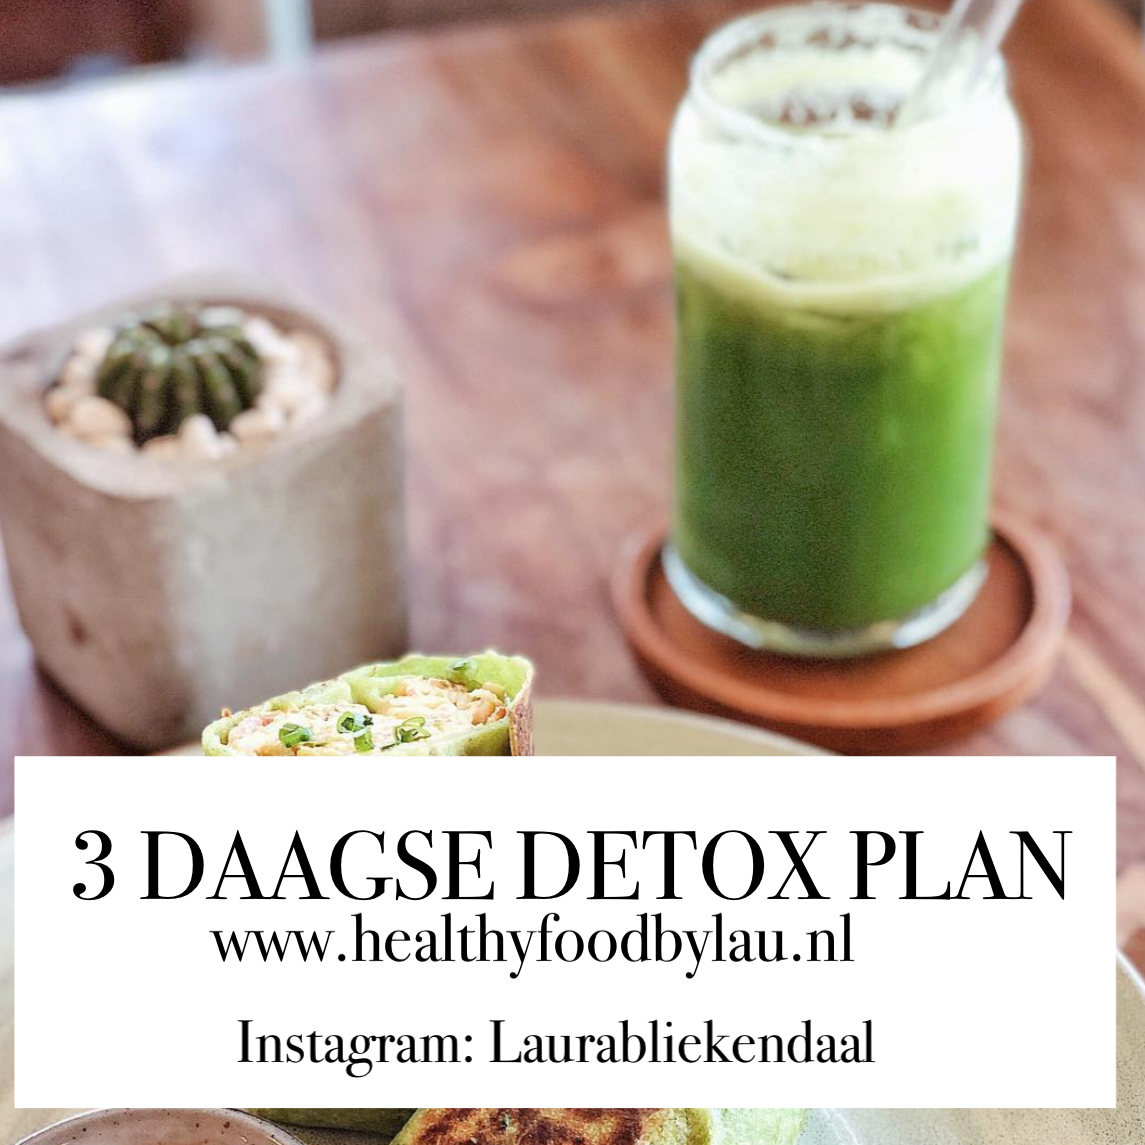 Detox plan – 3 dagen